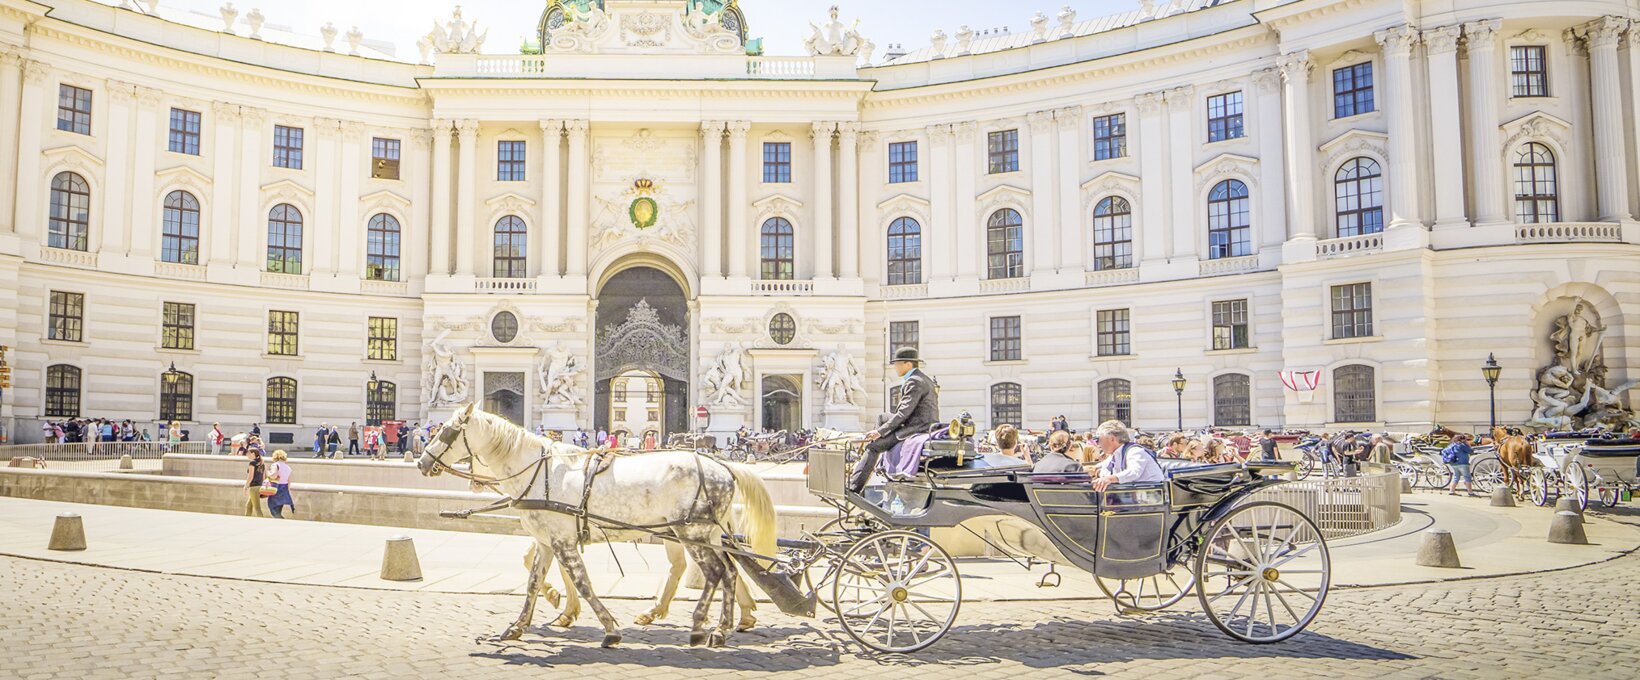 Hofburg mit Kutsche | Wien